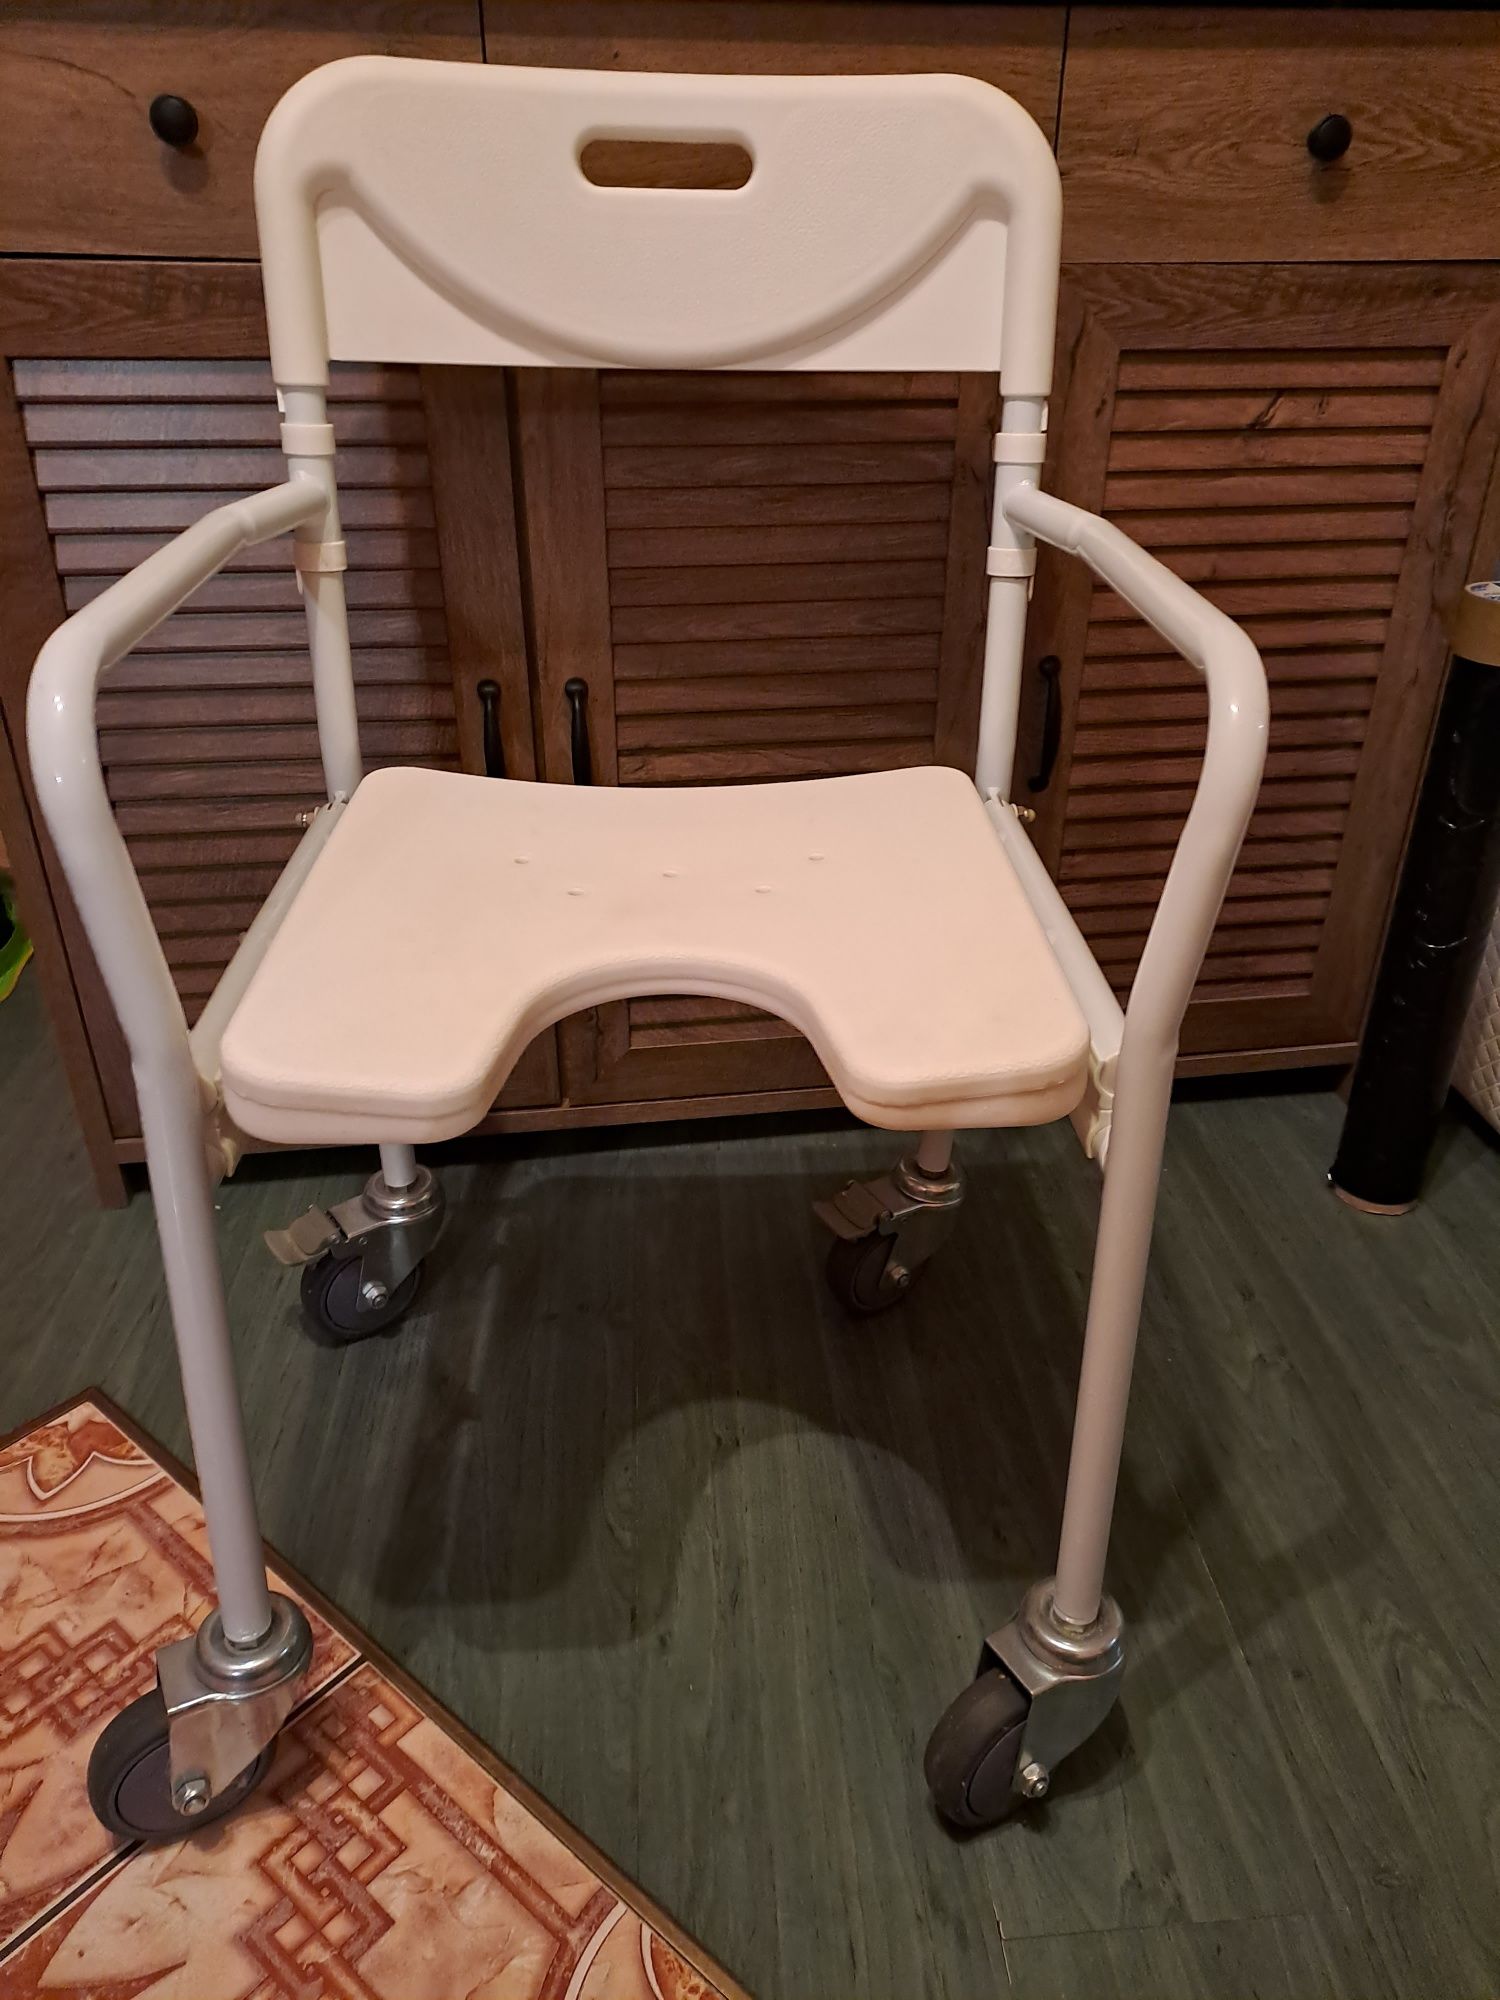 Krzesełko składane do kąpieli, dla niepełnosprawnych